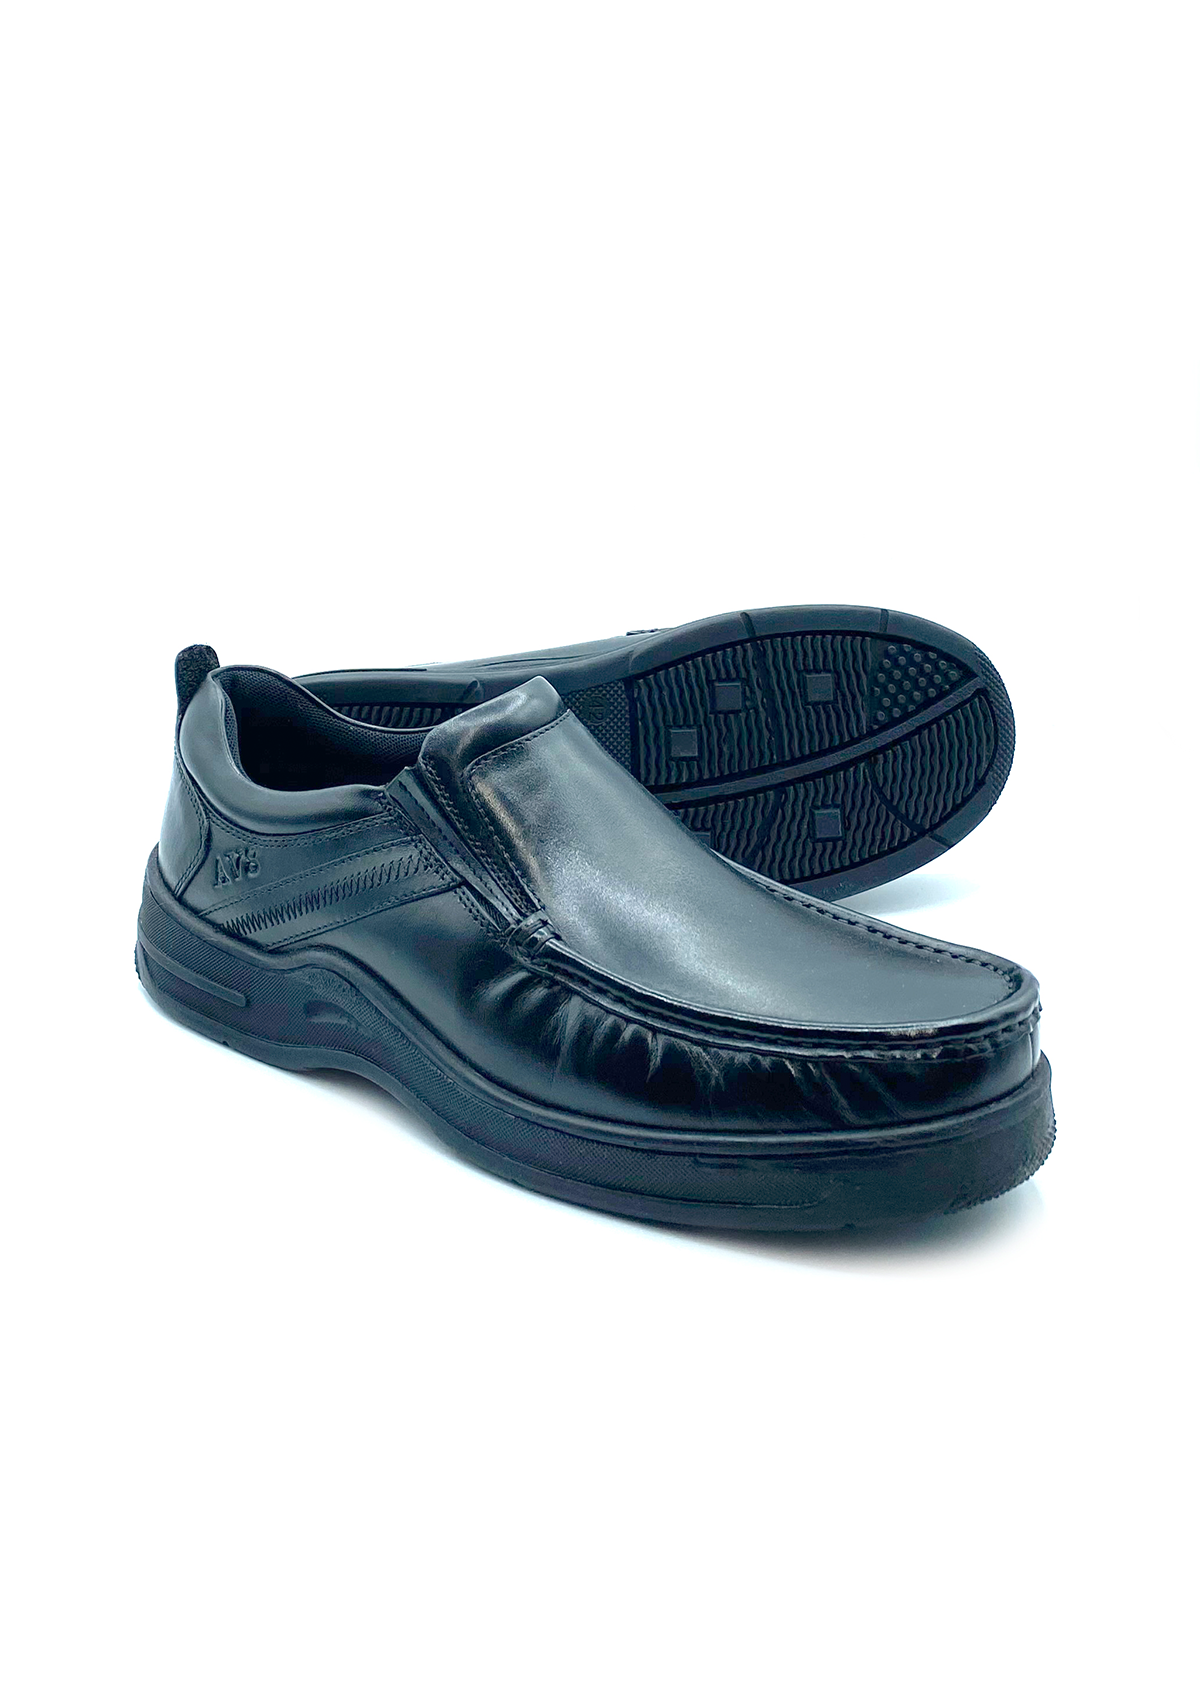 Dubarry Men Slip-on School Shoes Kalvin